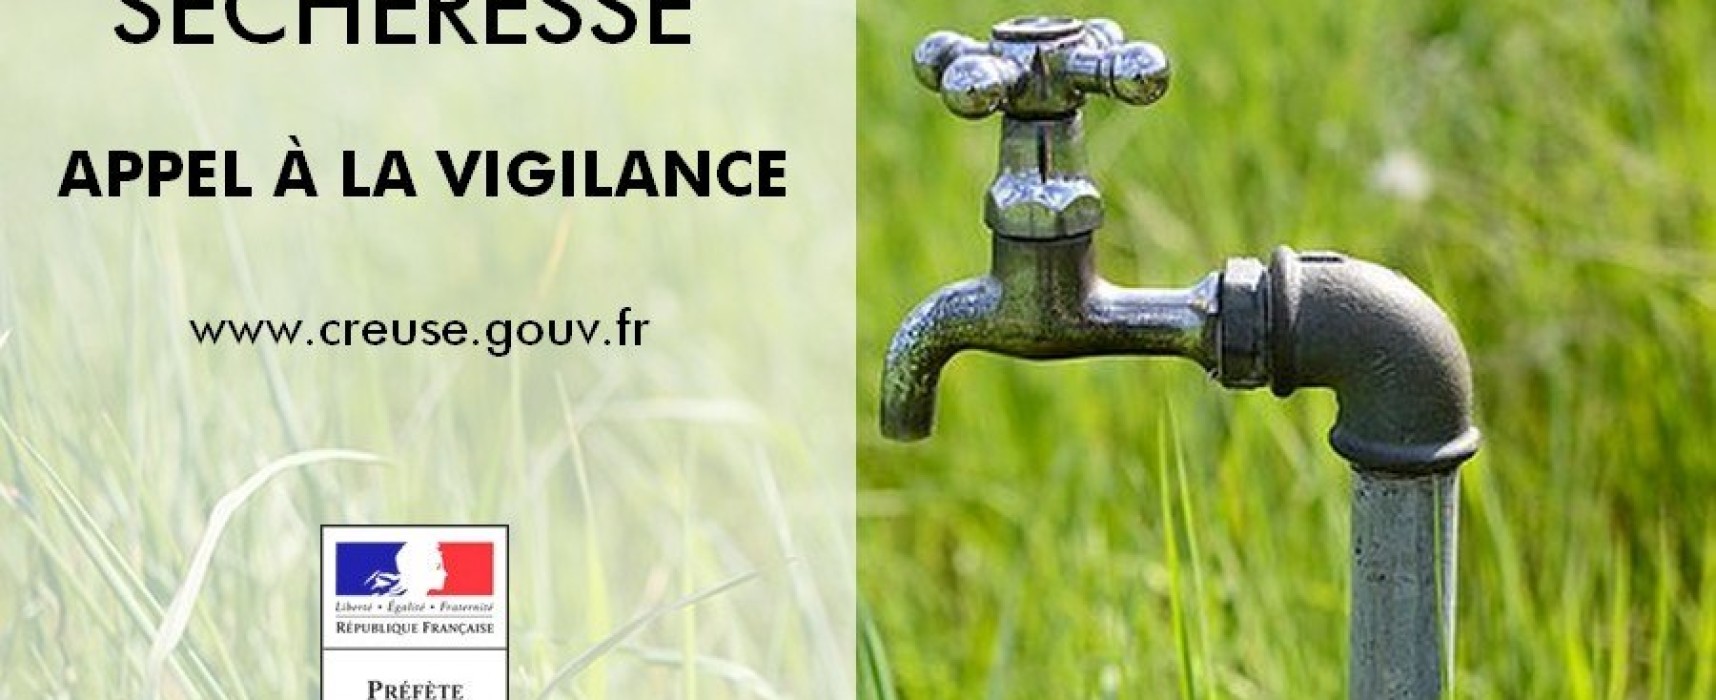 Maintien des restrictions d’usage de l’eau dans un contexte préoccupant qui impose à tous une attitude citoyenne